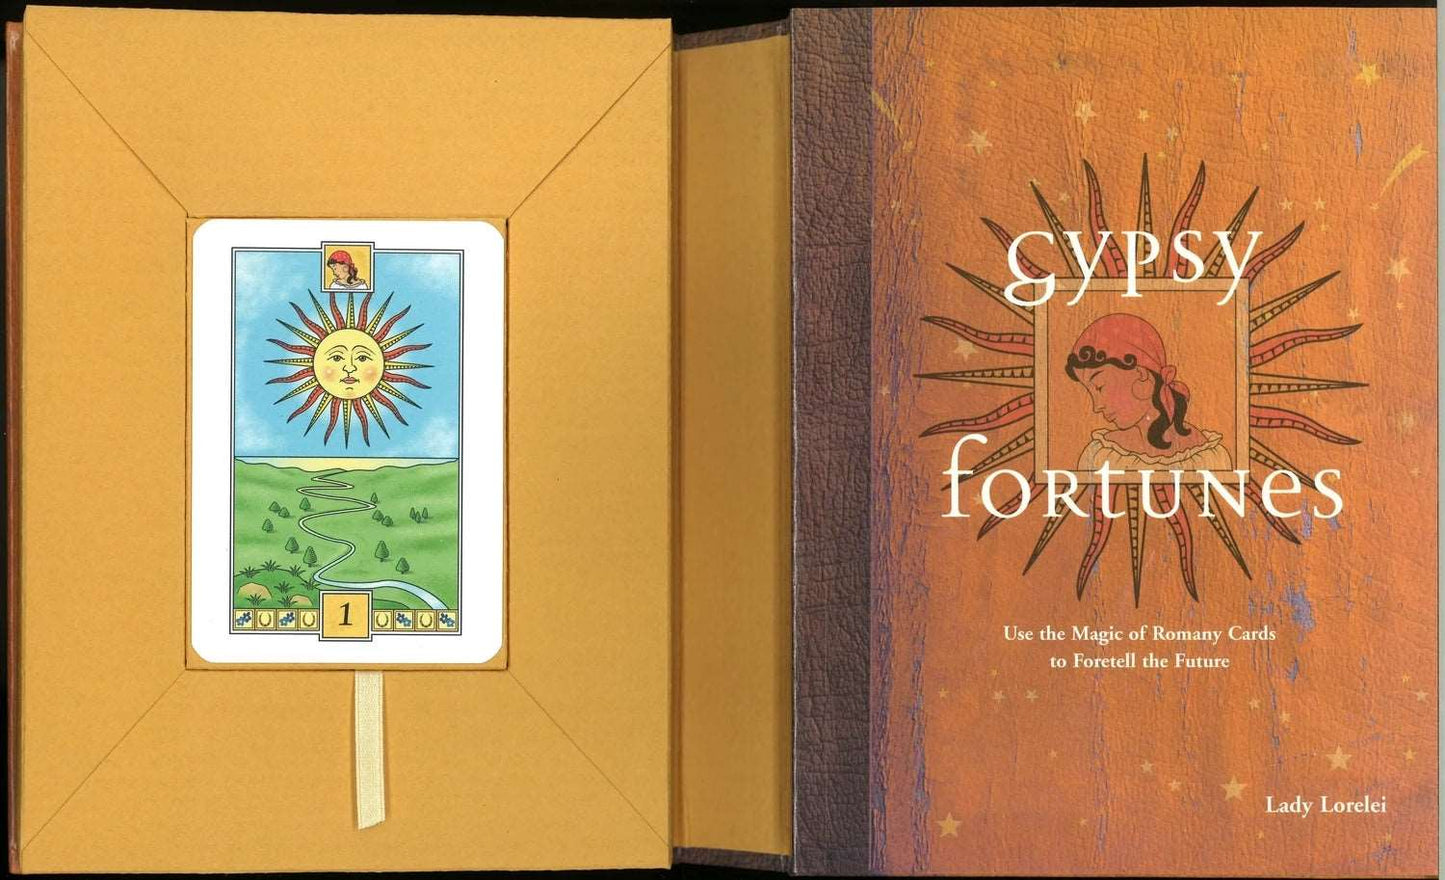 Gypsy Fortunes by Lady Lorelei